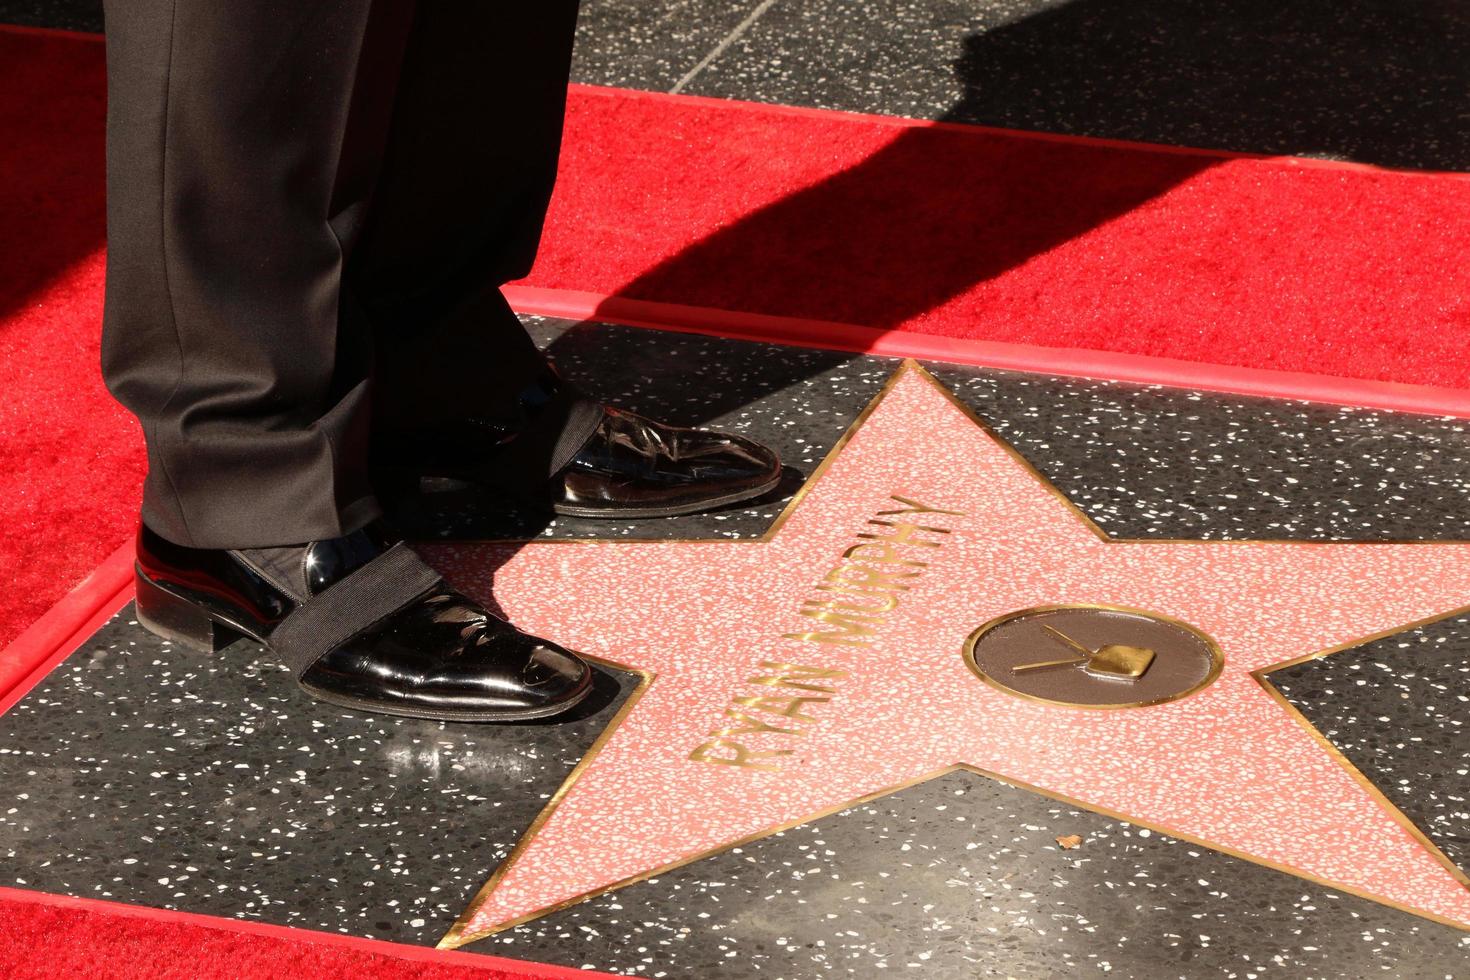 los angeles 4 décembre - chaussures ryan murphy sur son étoile wof lors de la cérémonie de l'étoile ryan murphy sur le hollywood walk of fame le 4 décembre 2018 à los angeles, ca photo